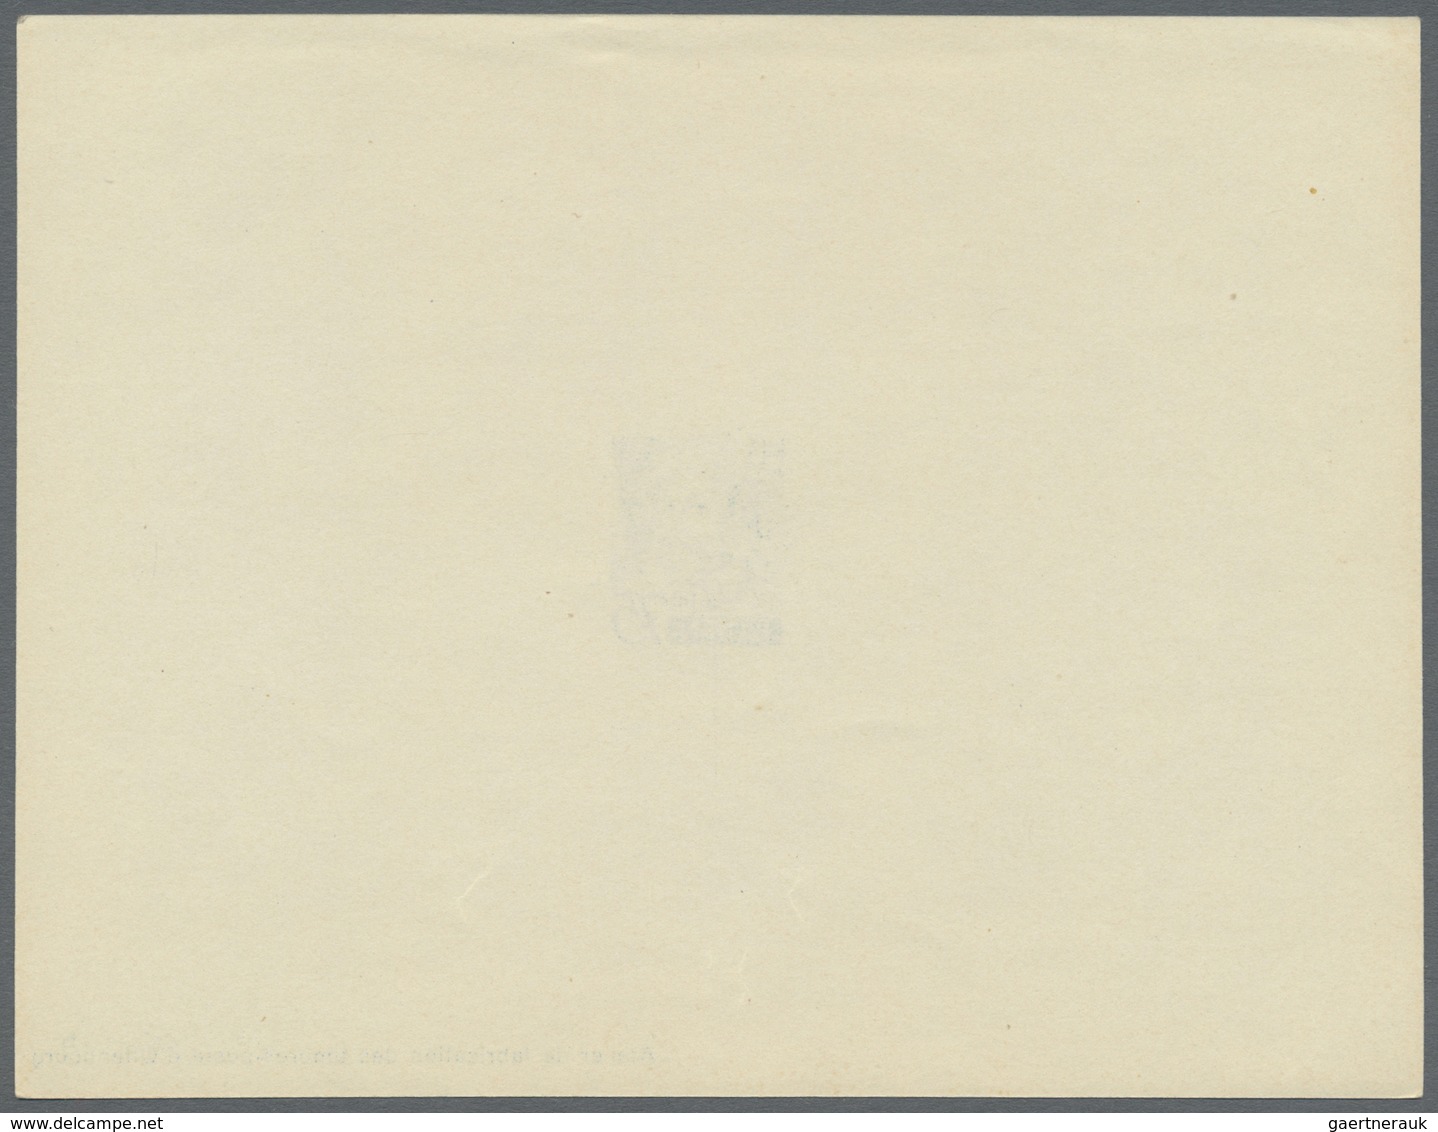 (*) Französische Zone - Baden: 1947, 2 Pfg. bis 1 M. Freimarken als Ministerblocks auf Kartonpapier mit